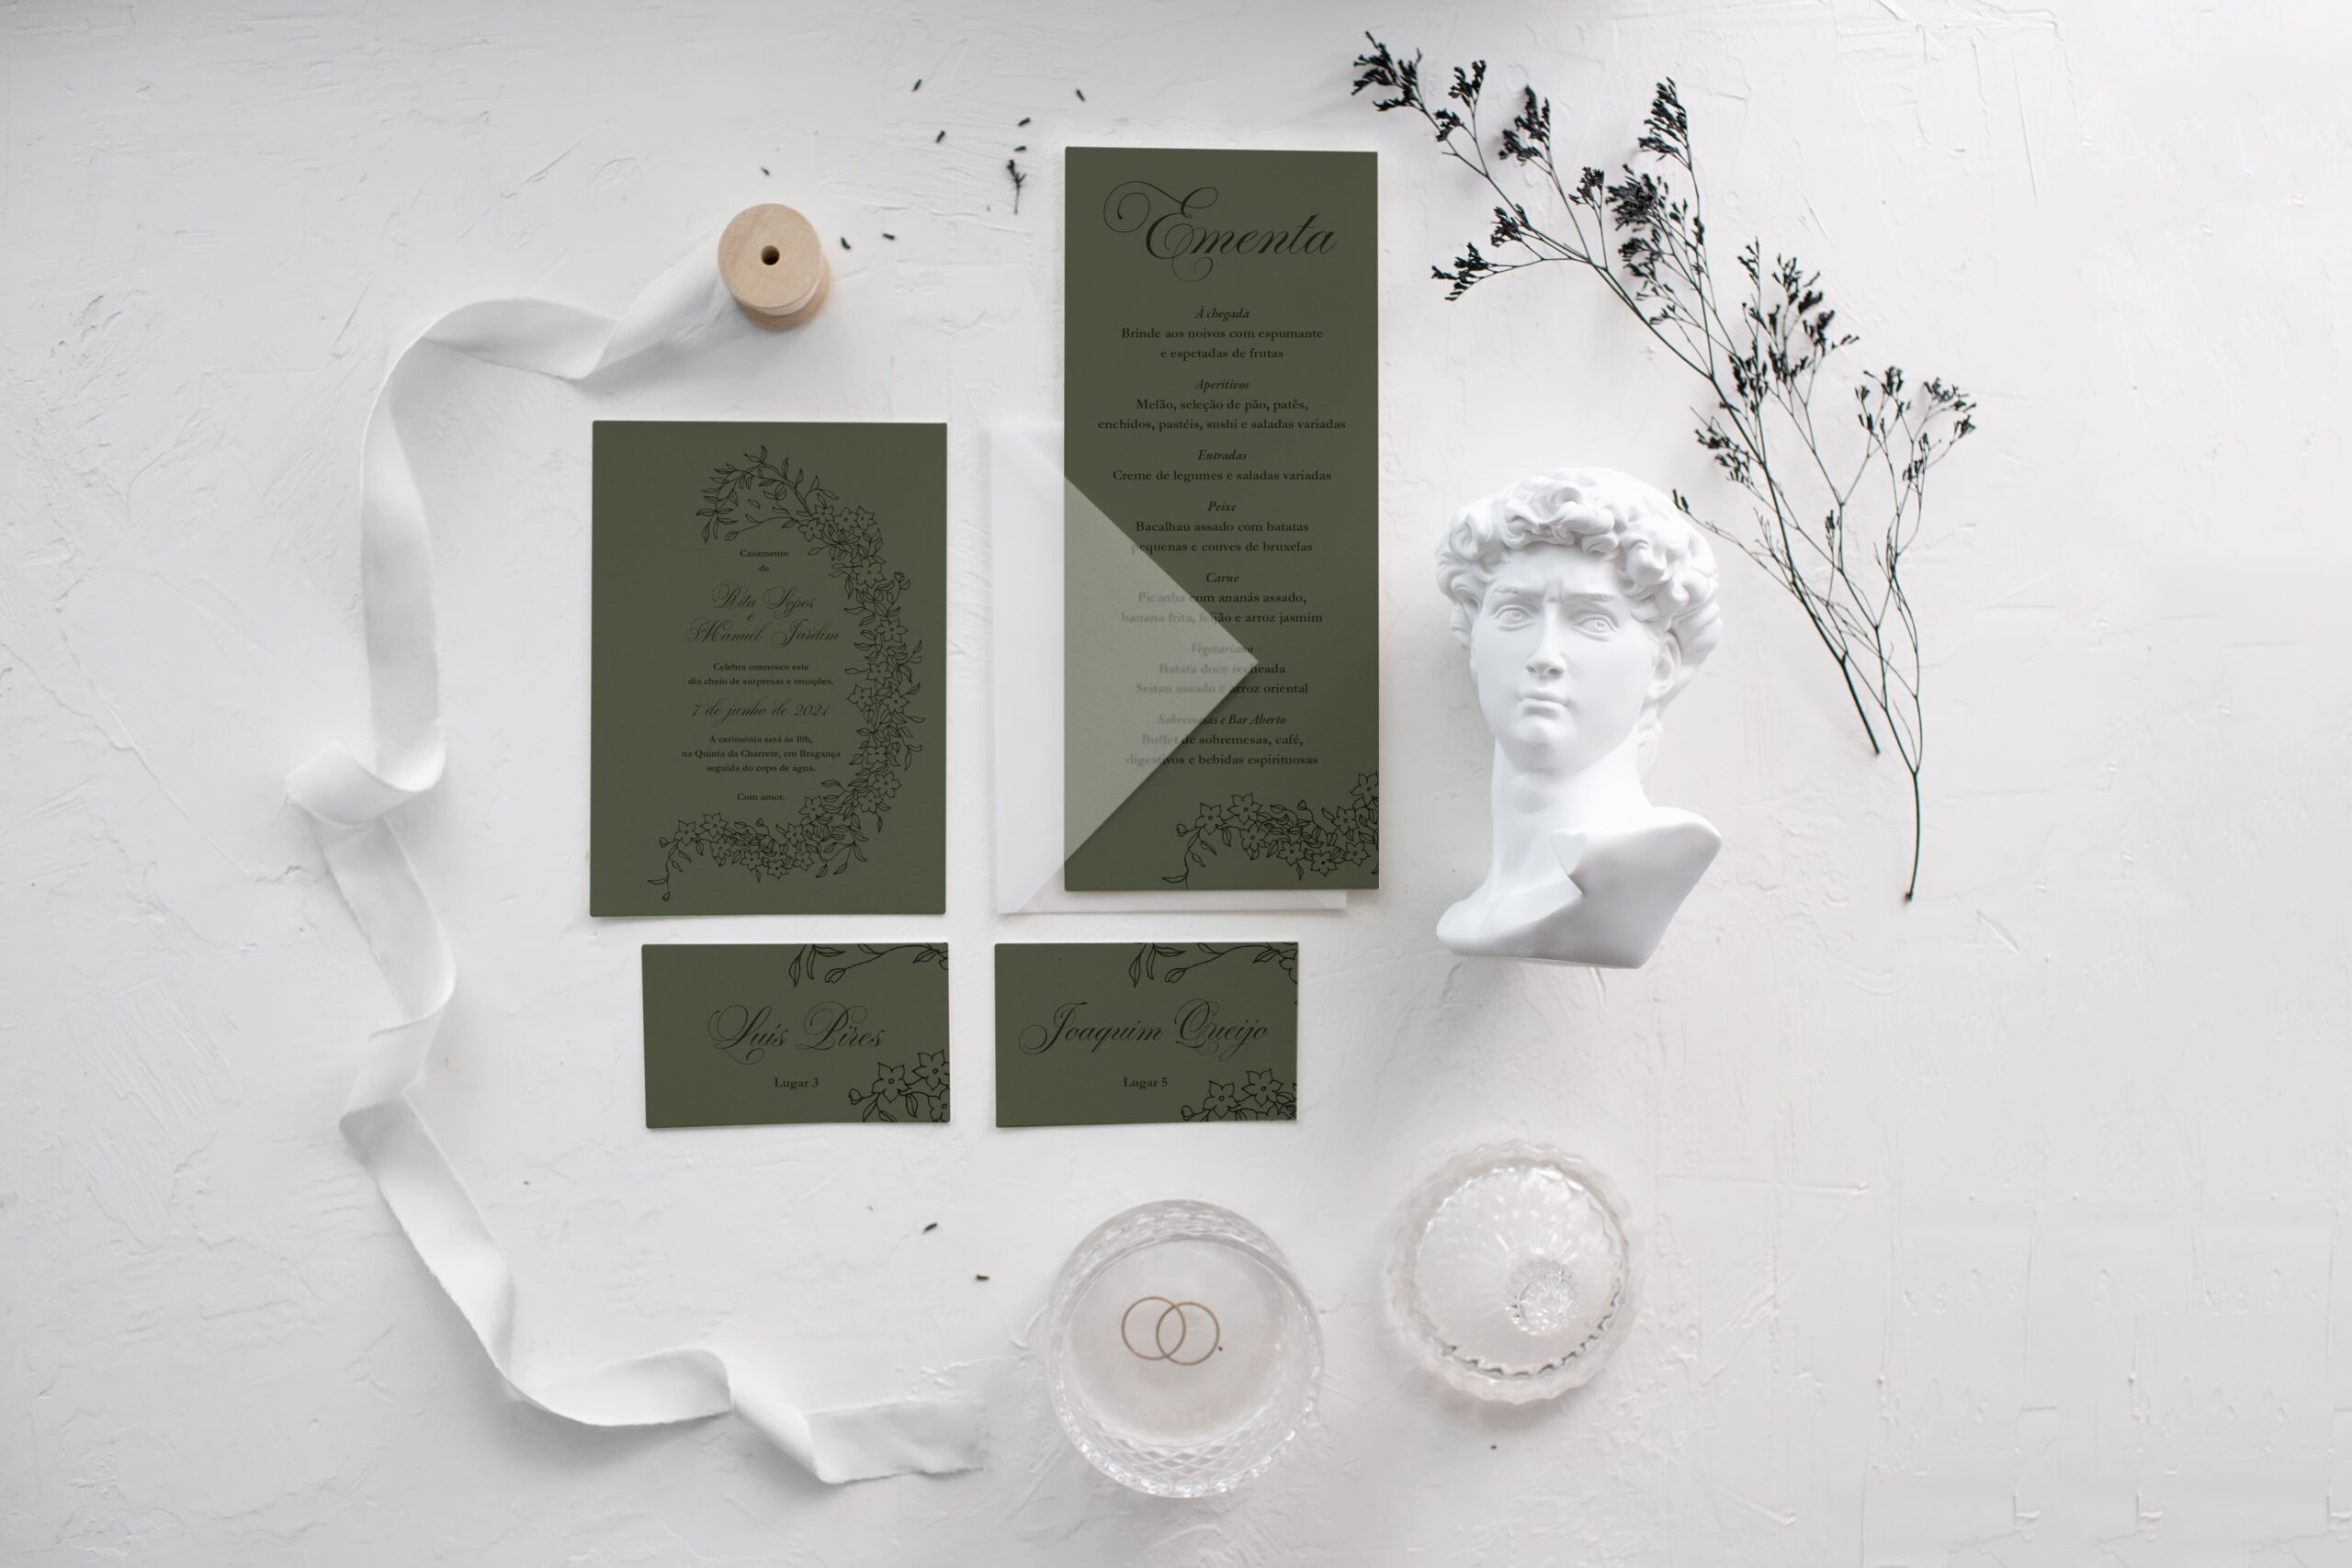 Convite de casamento, ementa e marcador de lugar em papel estilo artístico com detalhes florais